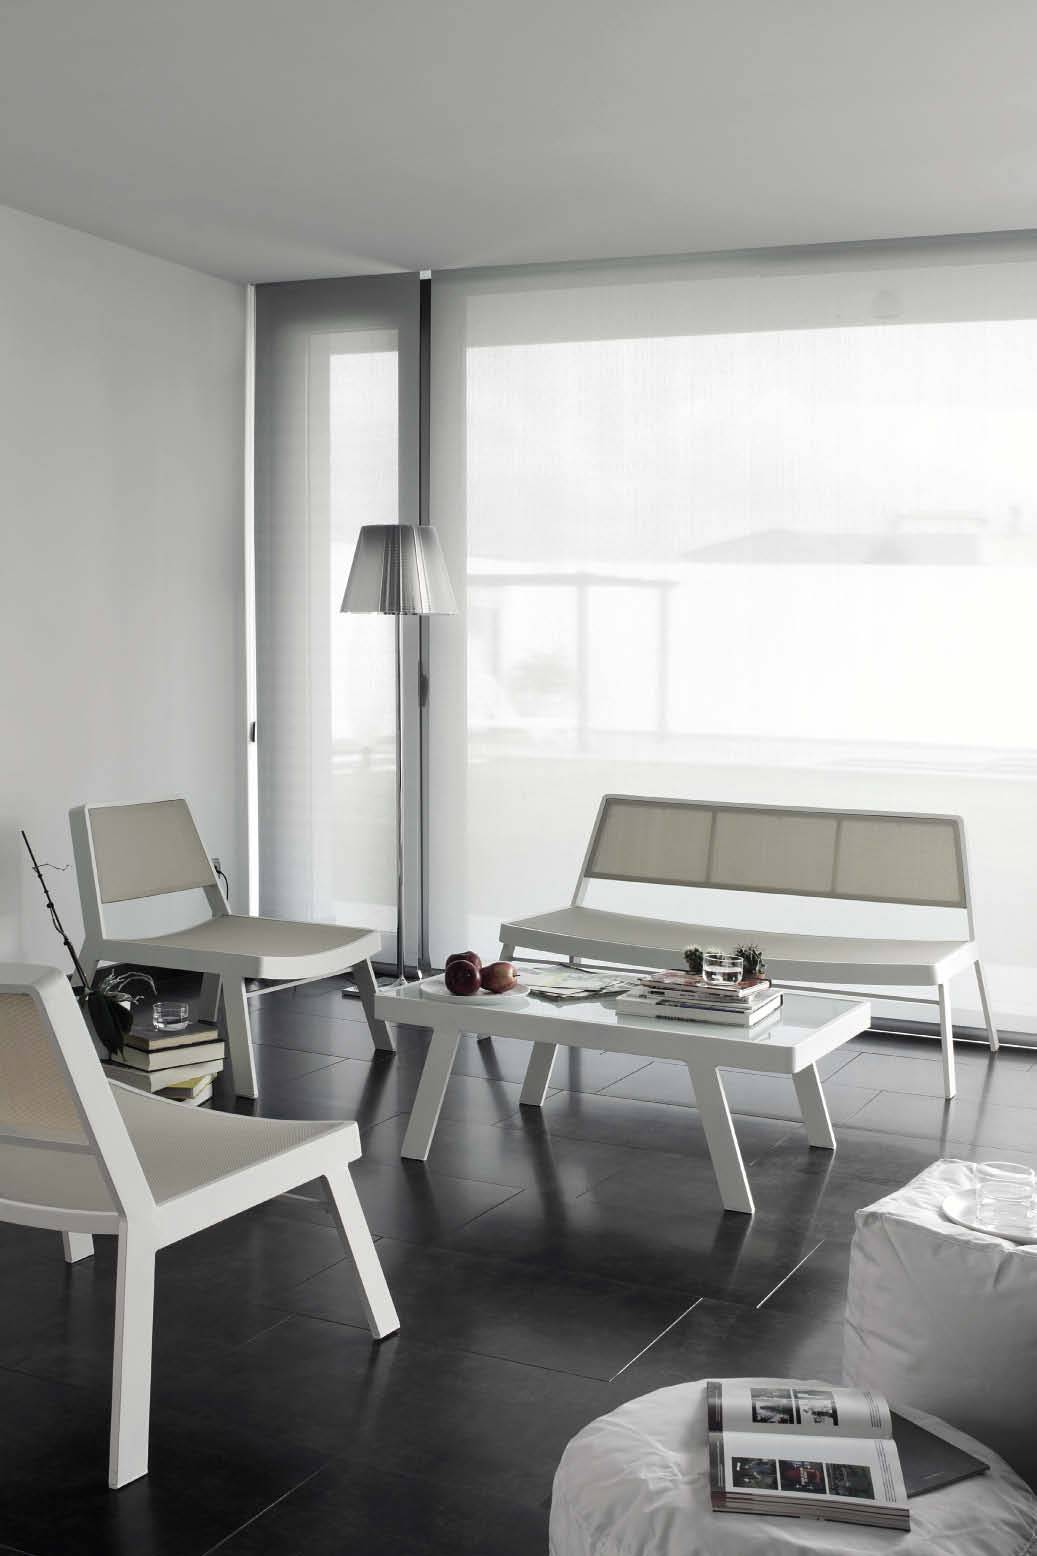 Ensemble fauteuils et table basse design en alu blanc Bandol 83150 Var